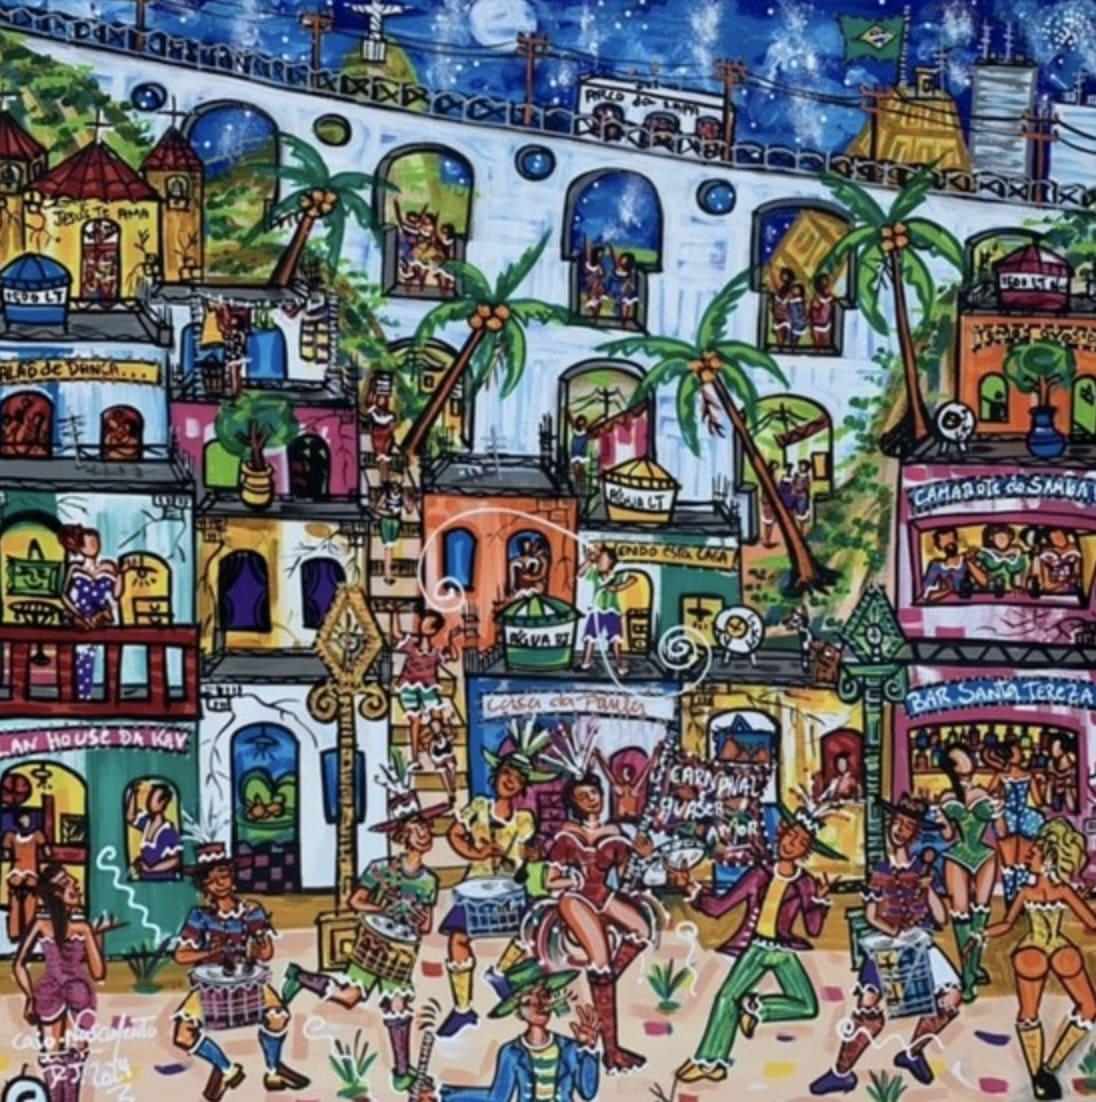 "Carnival Block in Arco" capture l'essence vibrante de la culture brésilienne sur la toile de fond d'une favela animée. Au premier plan, des rangées de bâtiments colorés bordent les rues, vibrant de l'énergie de la célébration du carnaval. La